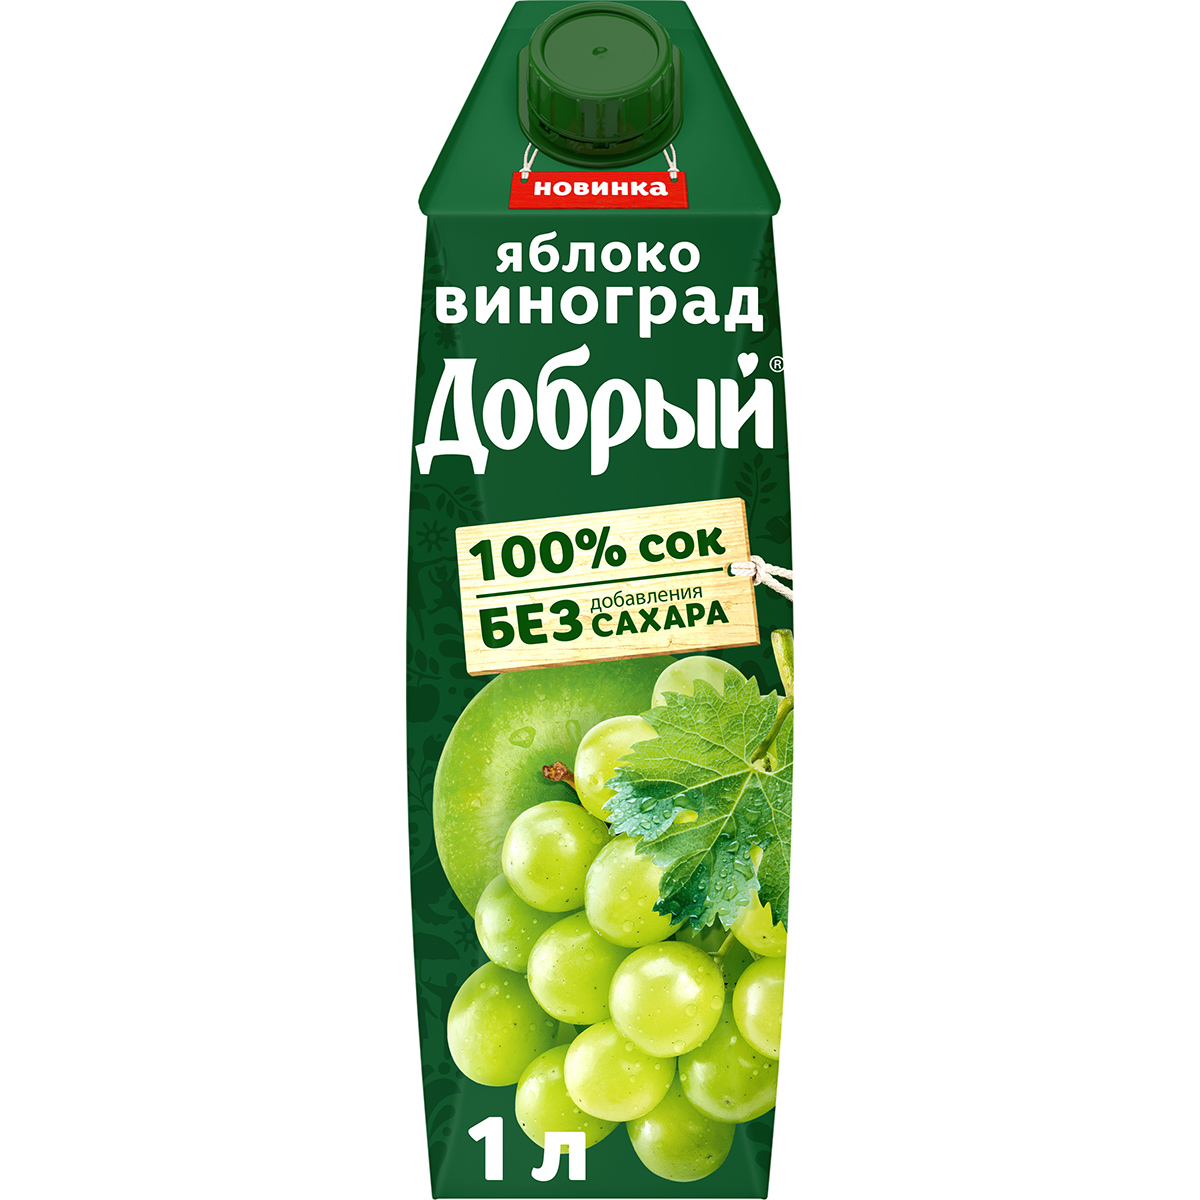 Сок Добрый Яблоко-виноград 1 л сок добрый яблоко осветлённый 0 2 л